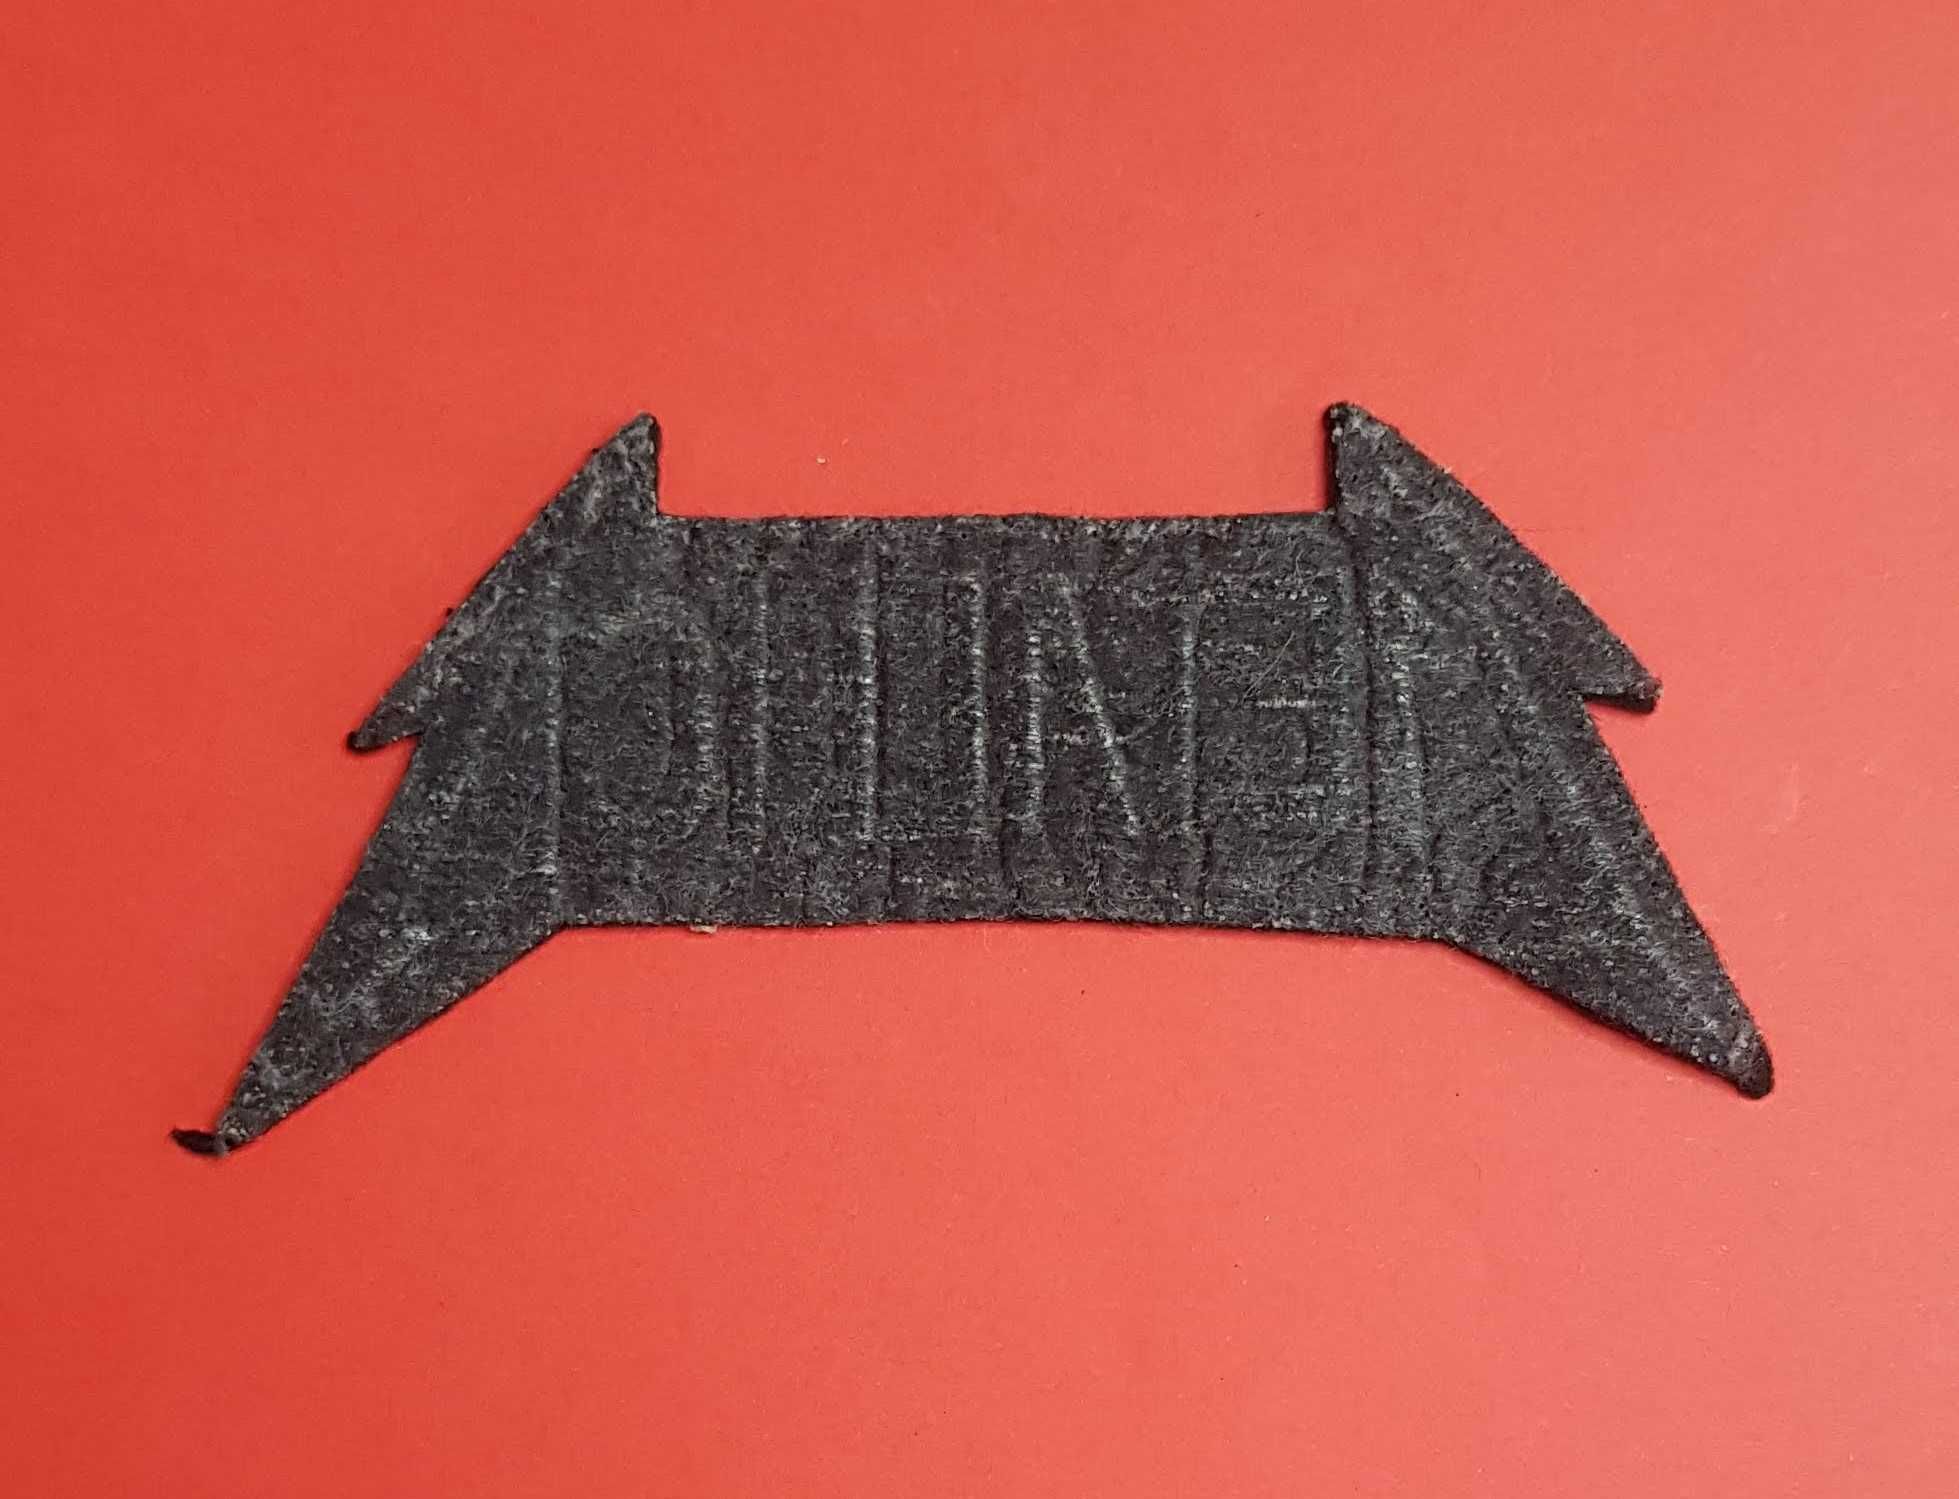 Vintage naszywka zespołu Metallica napis logo do przyszycia